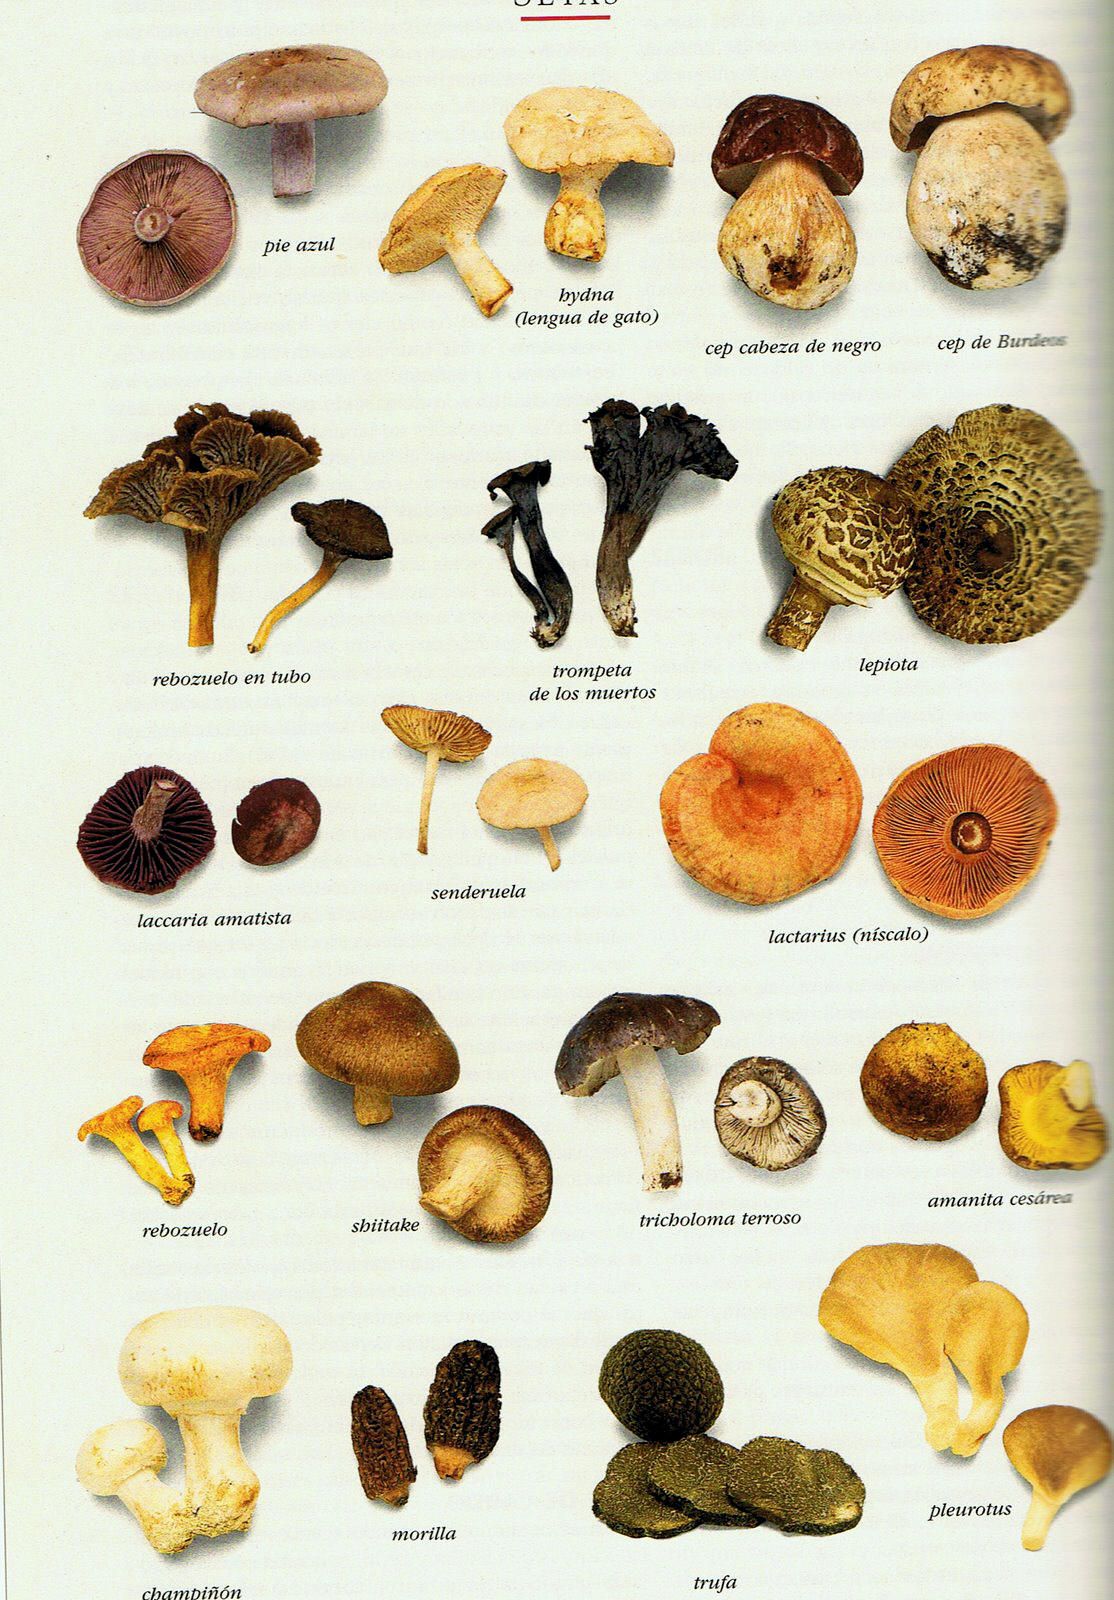 Съедобные дикорастущие грибы